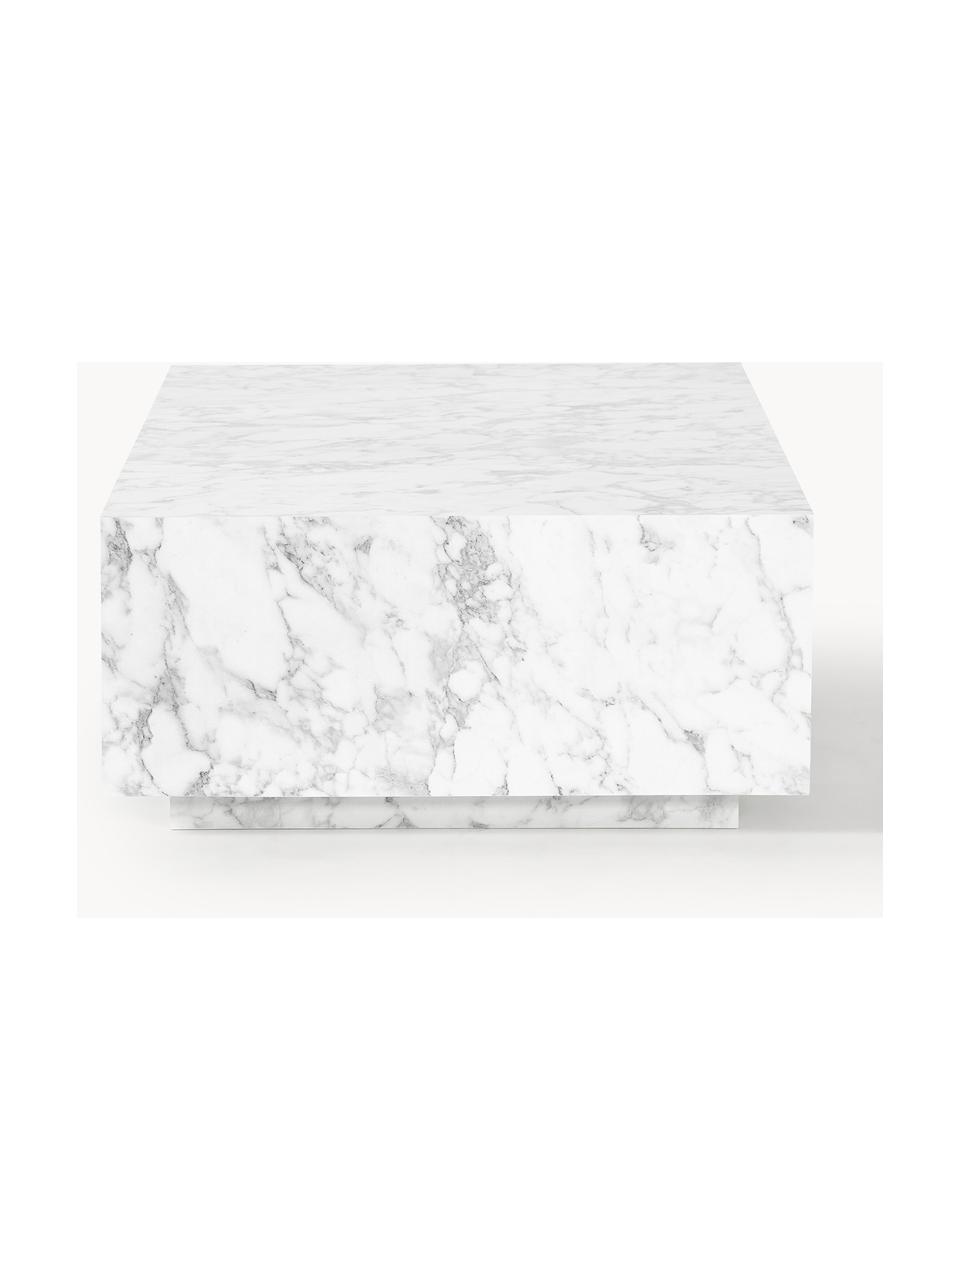 Tavolino da salotto effetto marmo Lesley, Pannello di fibra a media densità (MDF) rivestito con foglio di melamina, Effetto marmo bianco lucido, Larg. 120 x Prof. 75 cm